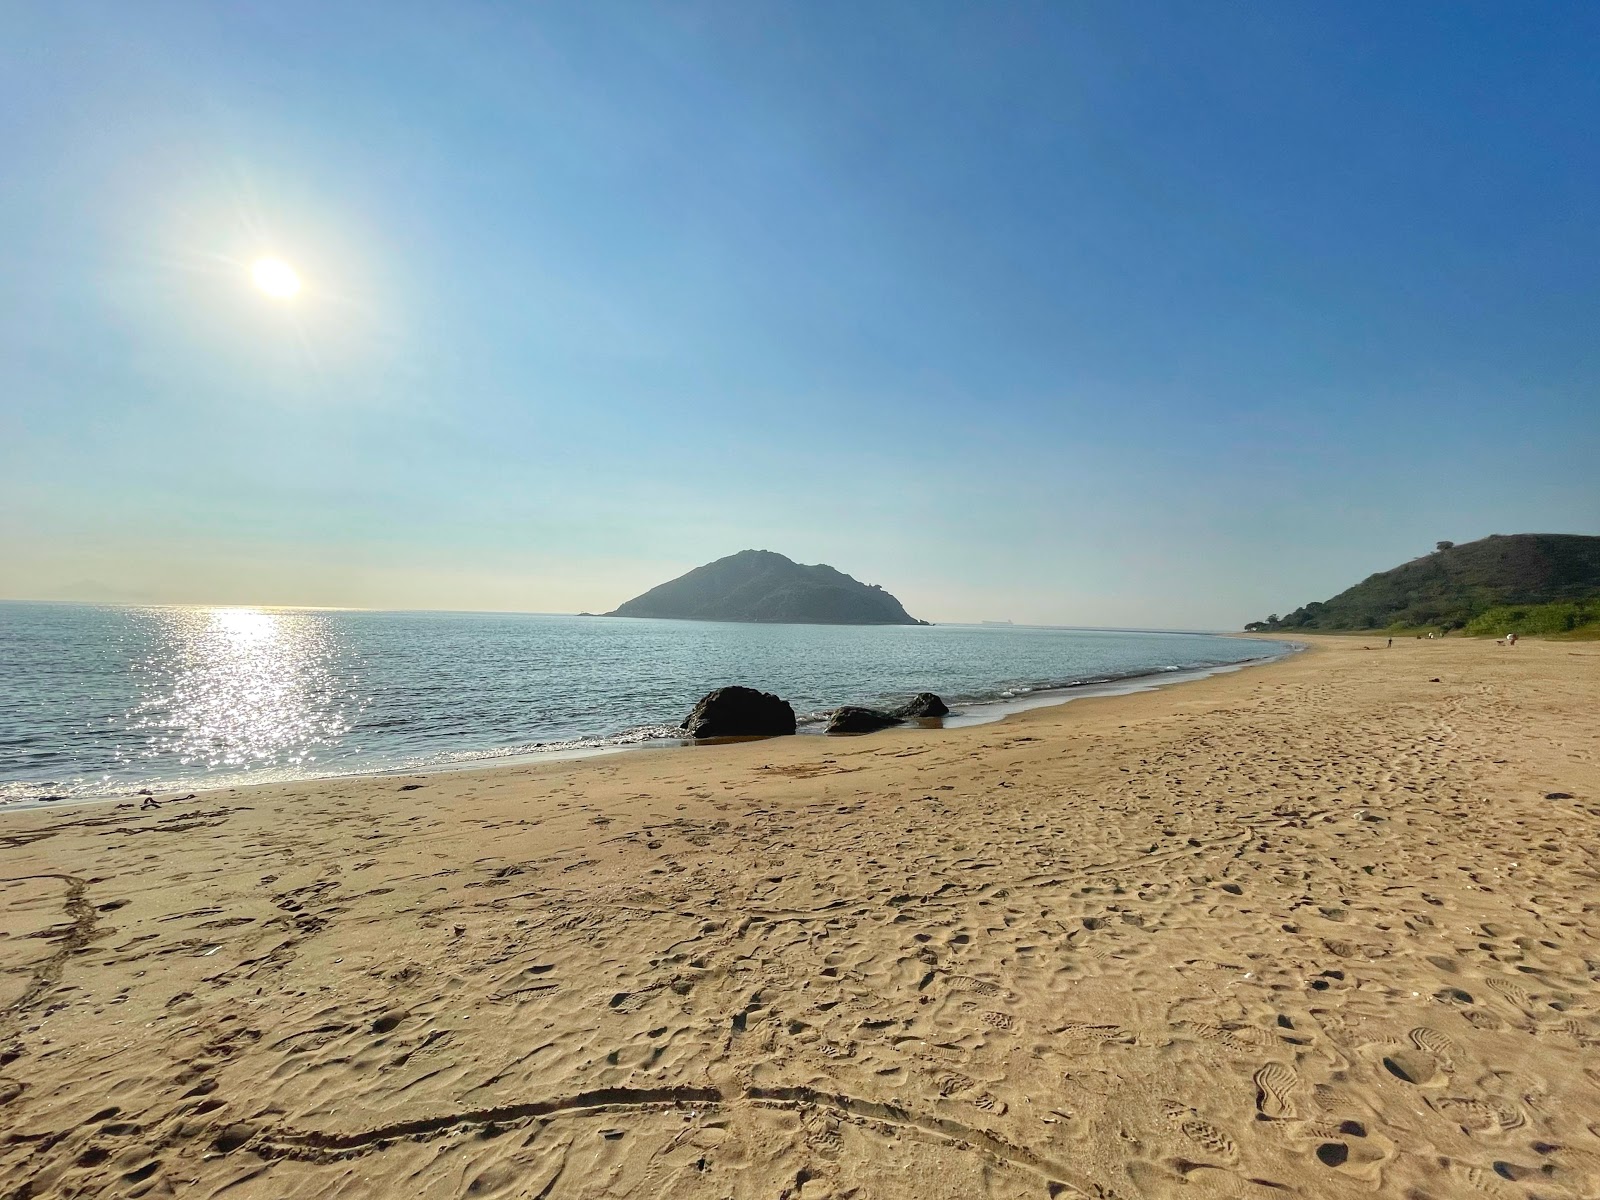 Fotografie cu Tsin Yue Wan cu plajă spațioasă